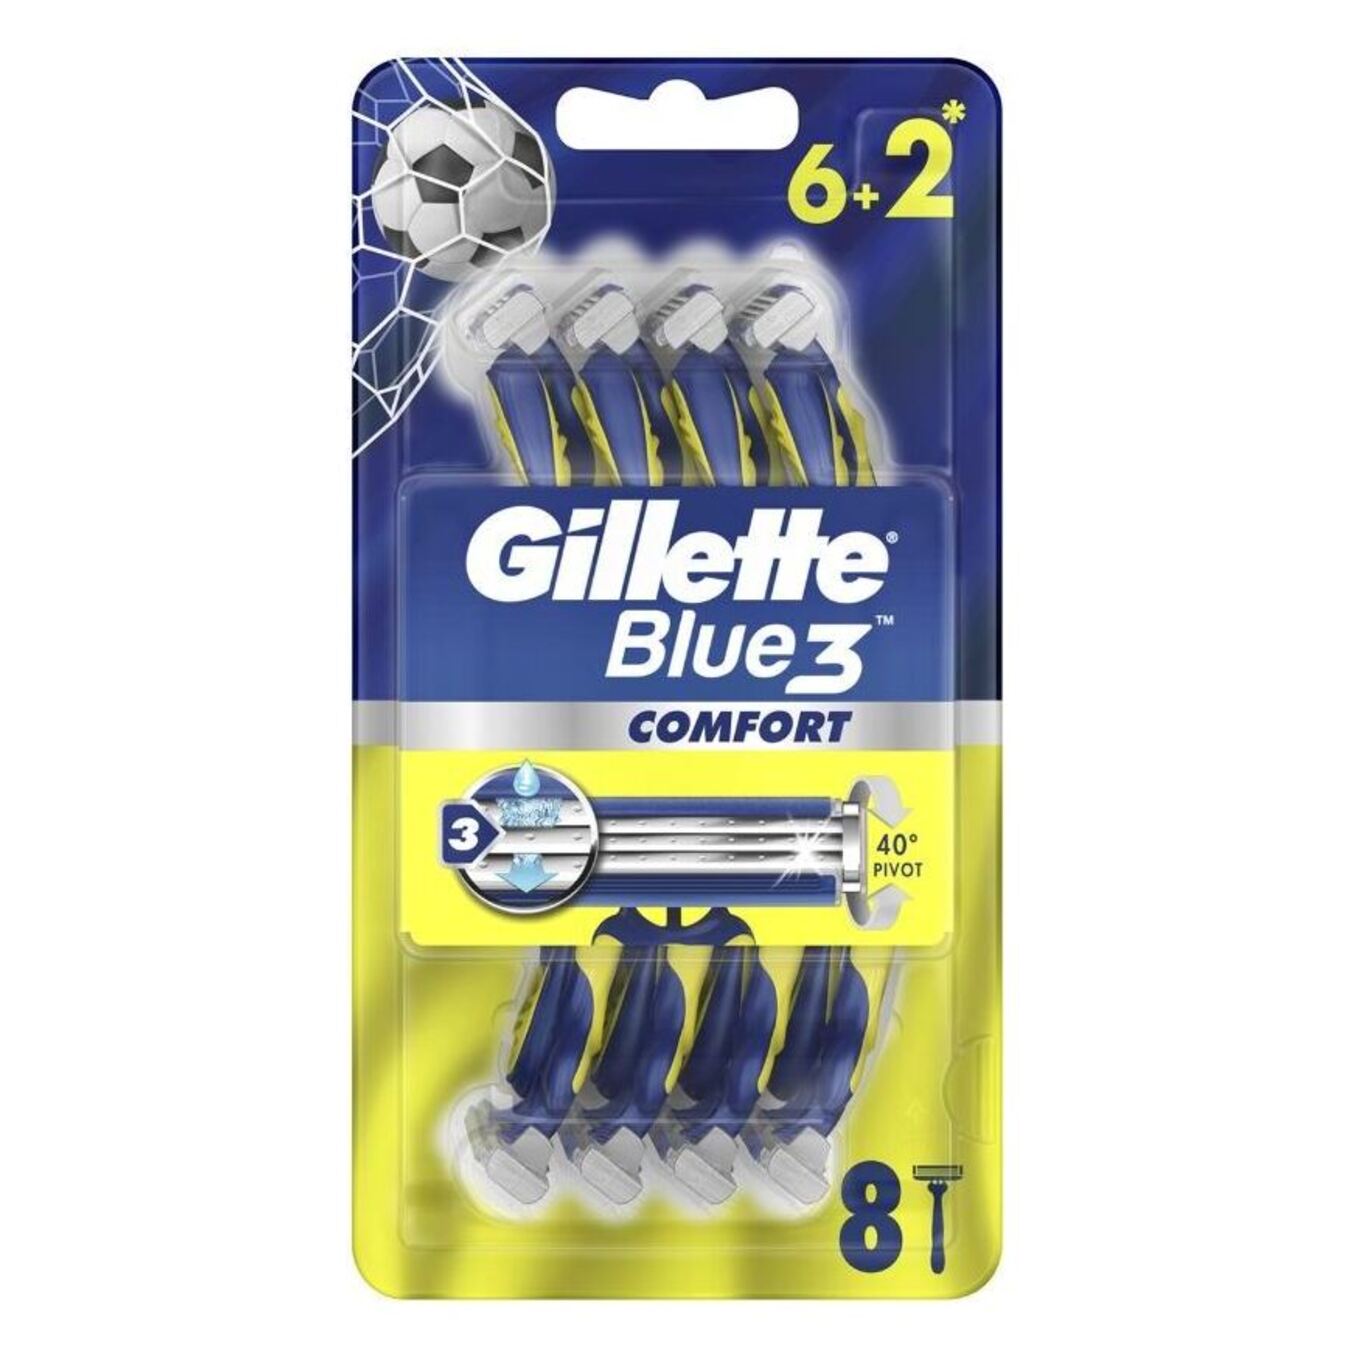 Gillette Blue3 disposable razors 6+2 pcs